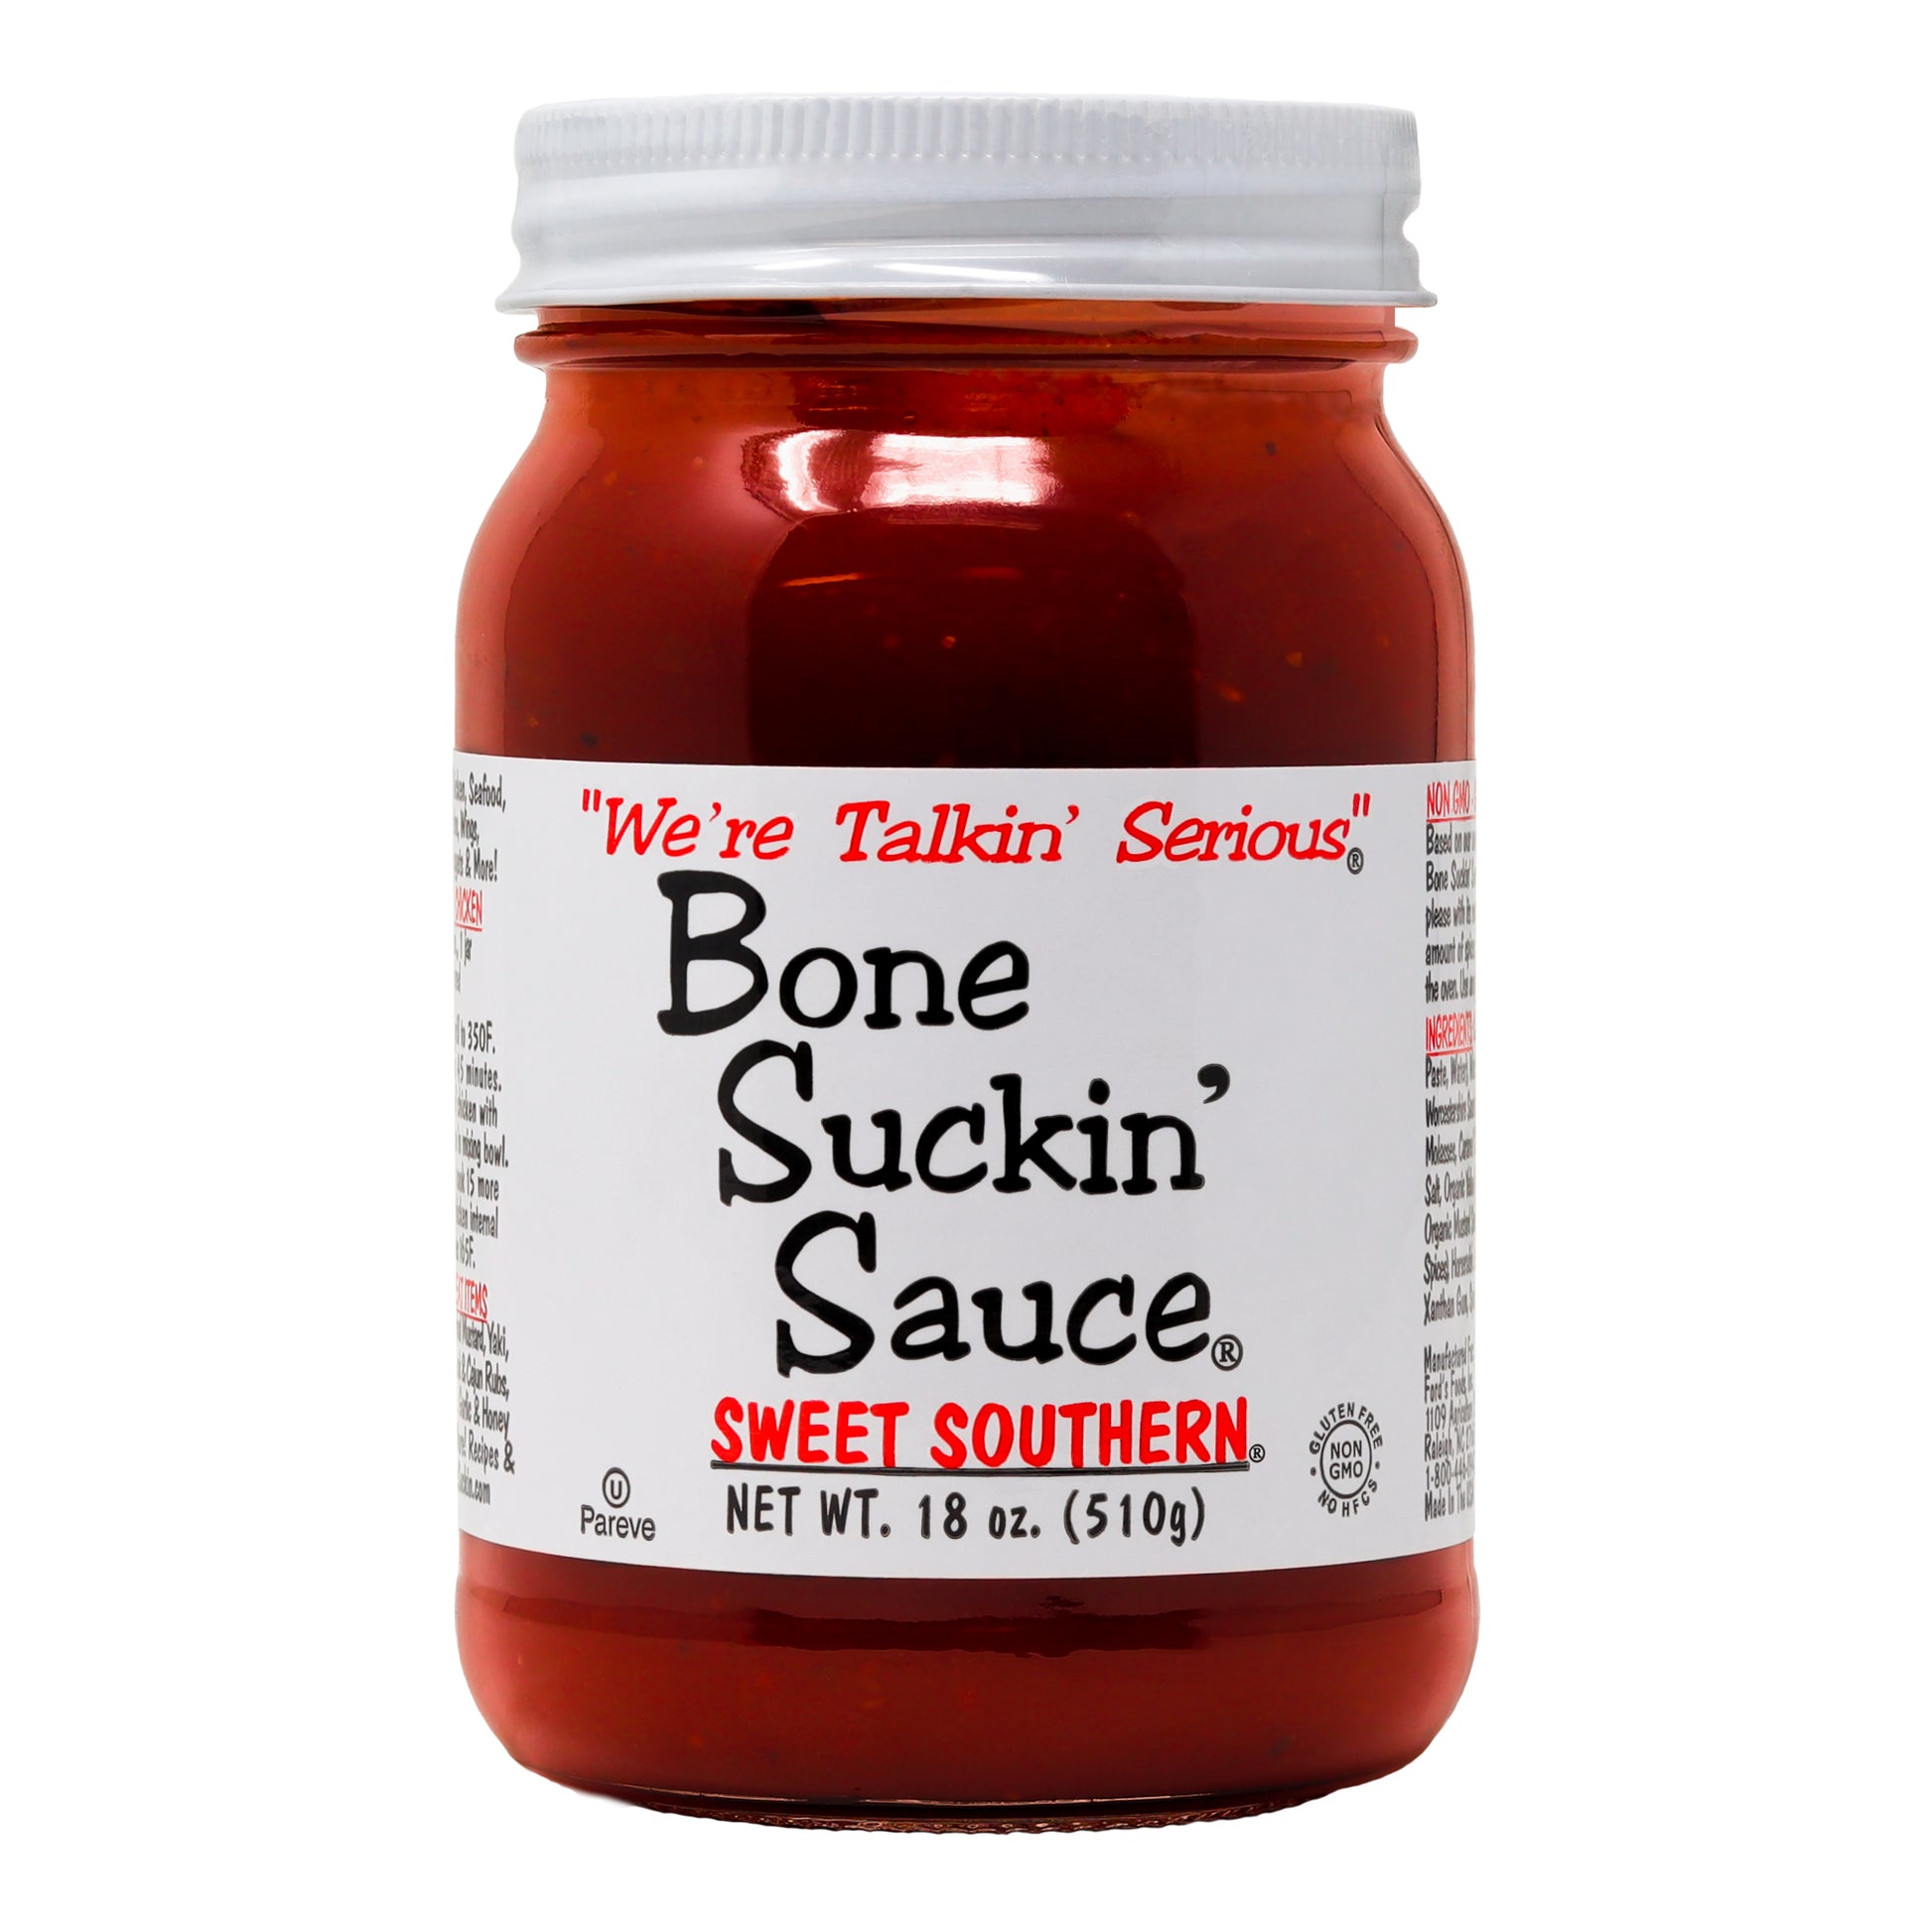 Bone Suckin' Sauce® Sweet Southern®